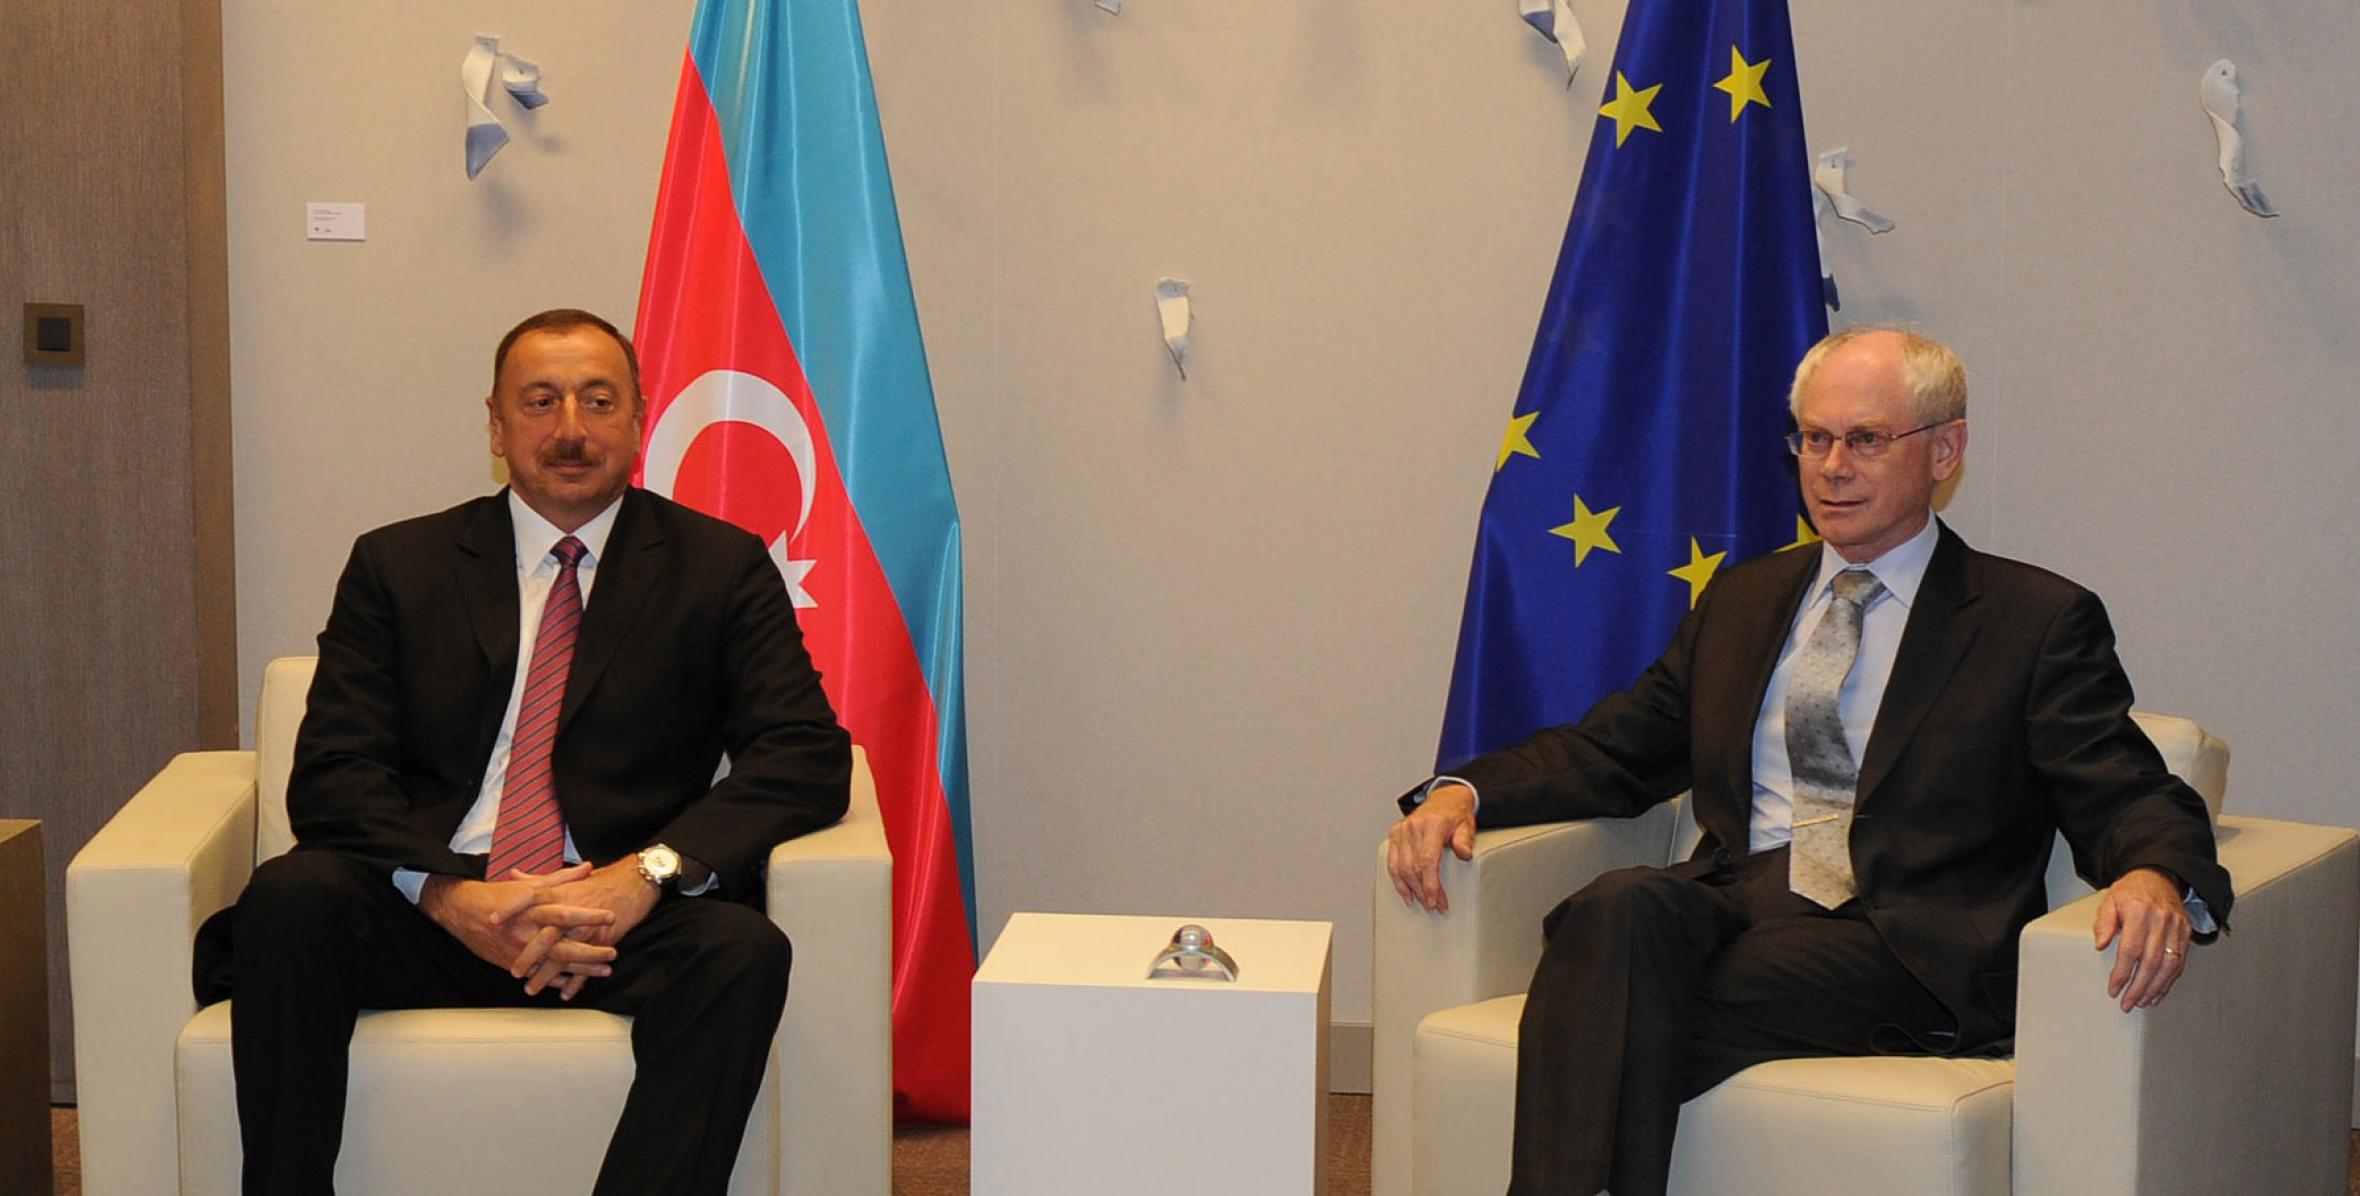 Ilham Aliyev met with European Union President Herman Van Rompuy